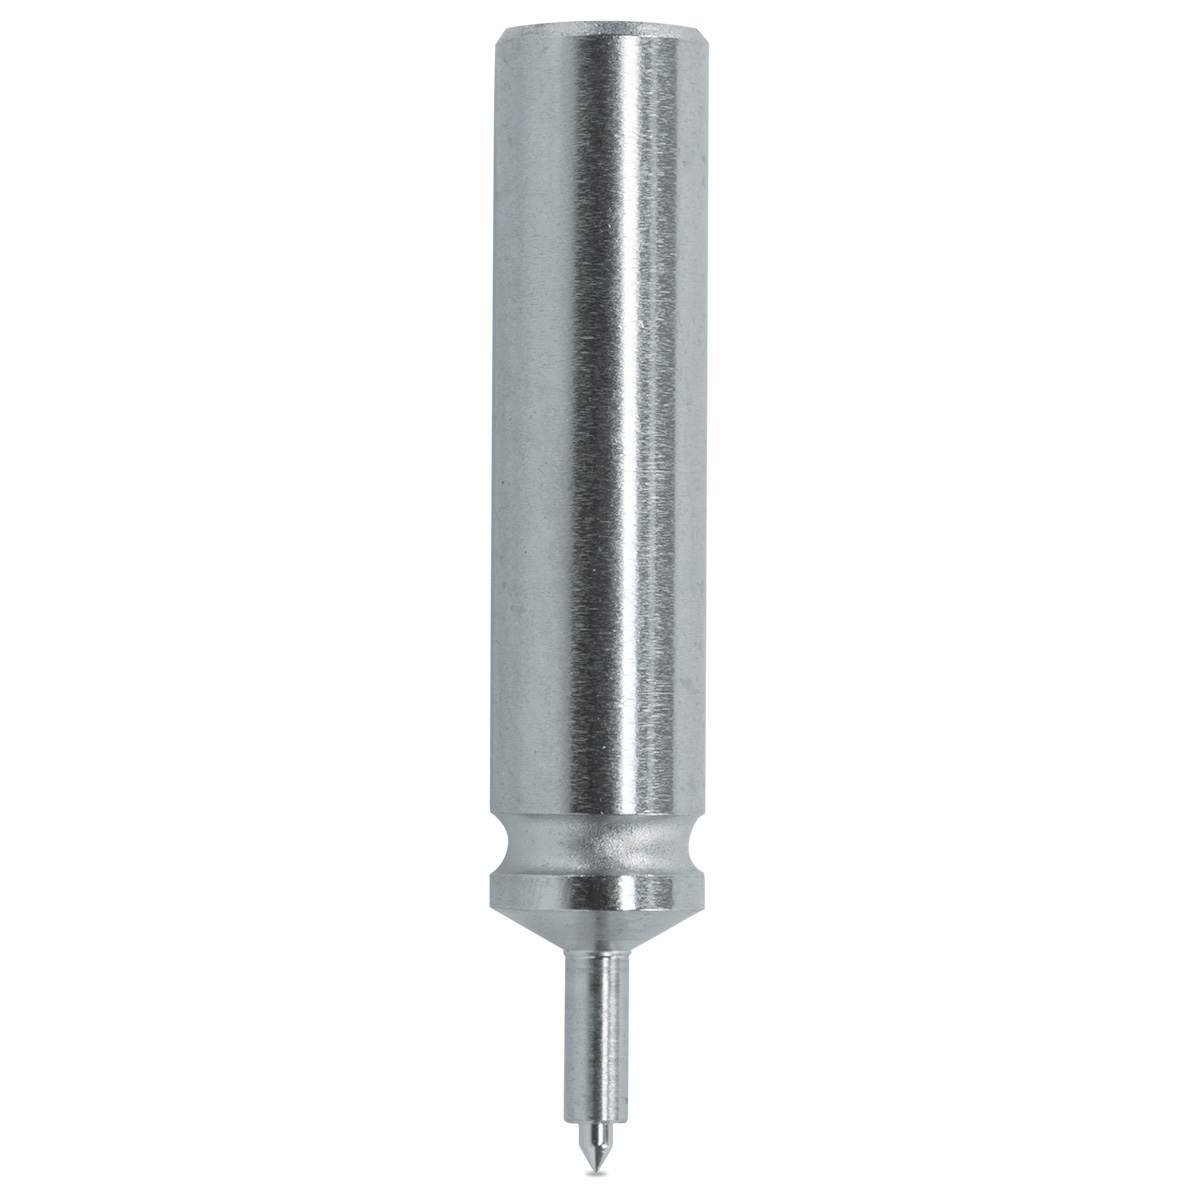 Pump pusher Horia 1000-04 N° 80, Ø body 4 mm, Ø tip 0,4 mm, support Ø 0,75 mm